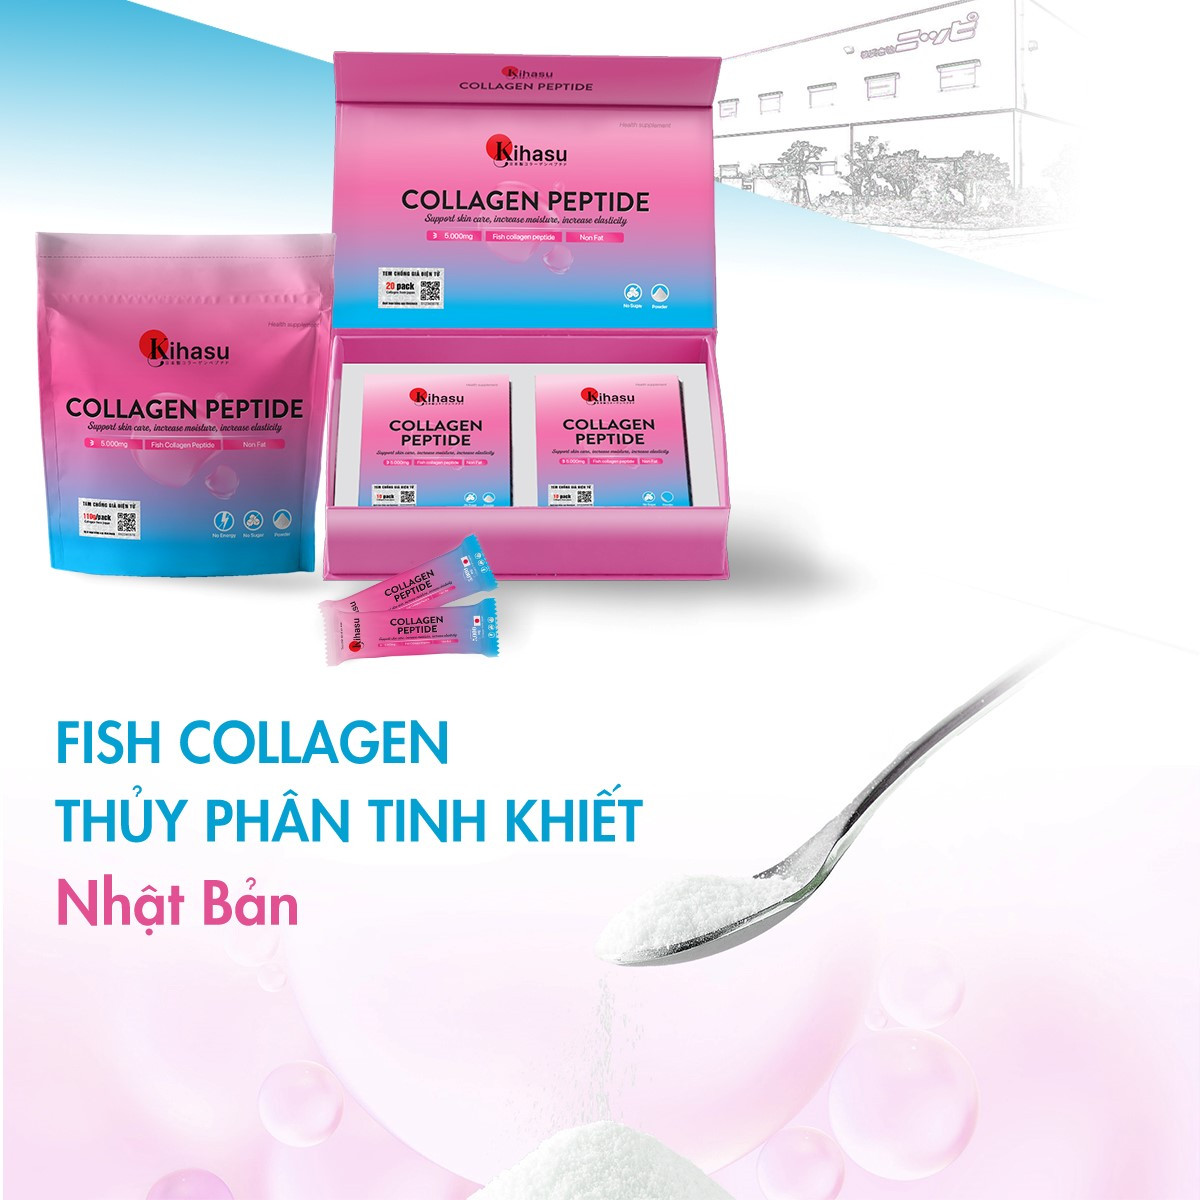 TPBVSK bổ sung collagen thủy phân từ cá